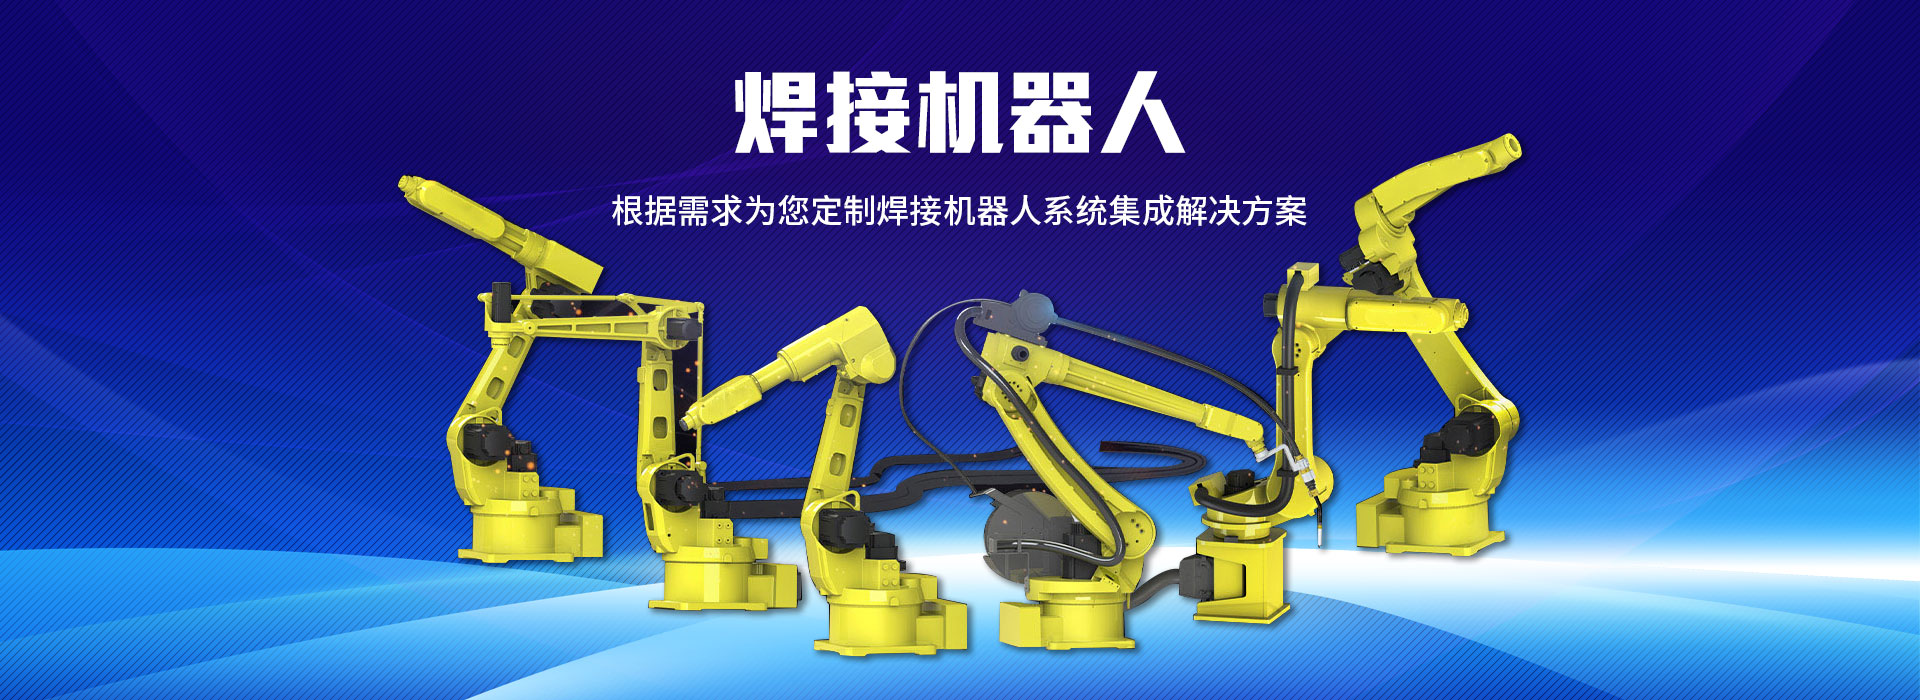 机器人系统相关信息可以咨询电焊机厂家,电焊机